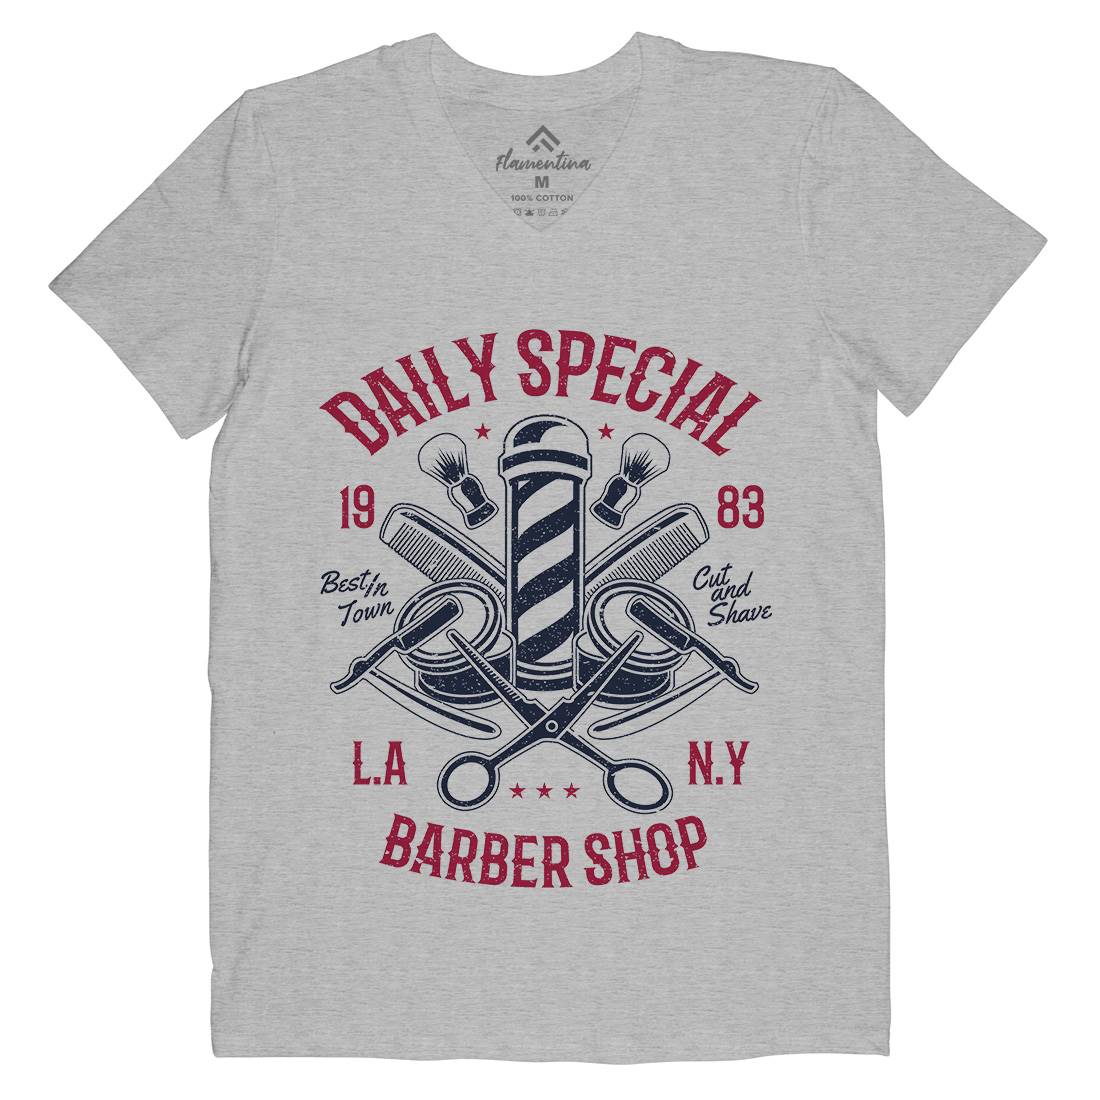 Daily Special Shop Mens V-Neck T-Shirt Barber A041